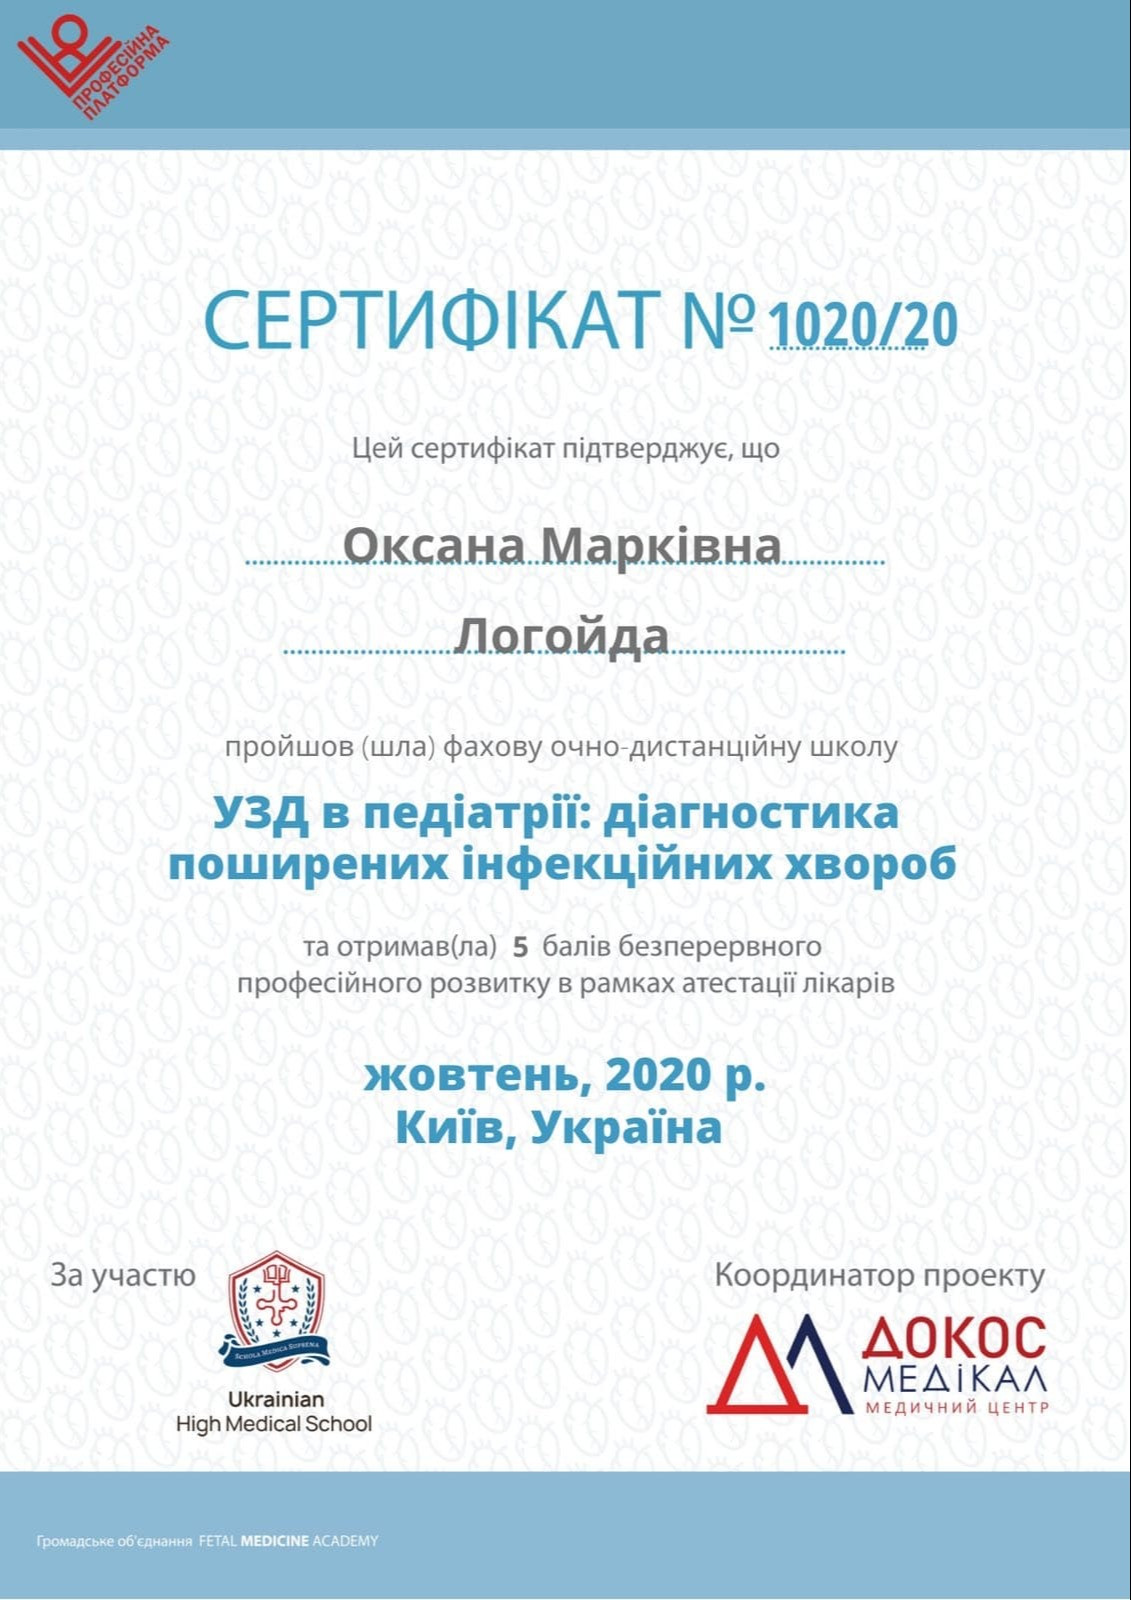 Сертификат о прохождении специализированной очно-дистанционной школы